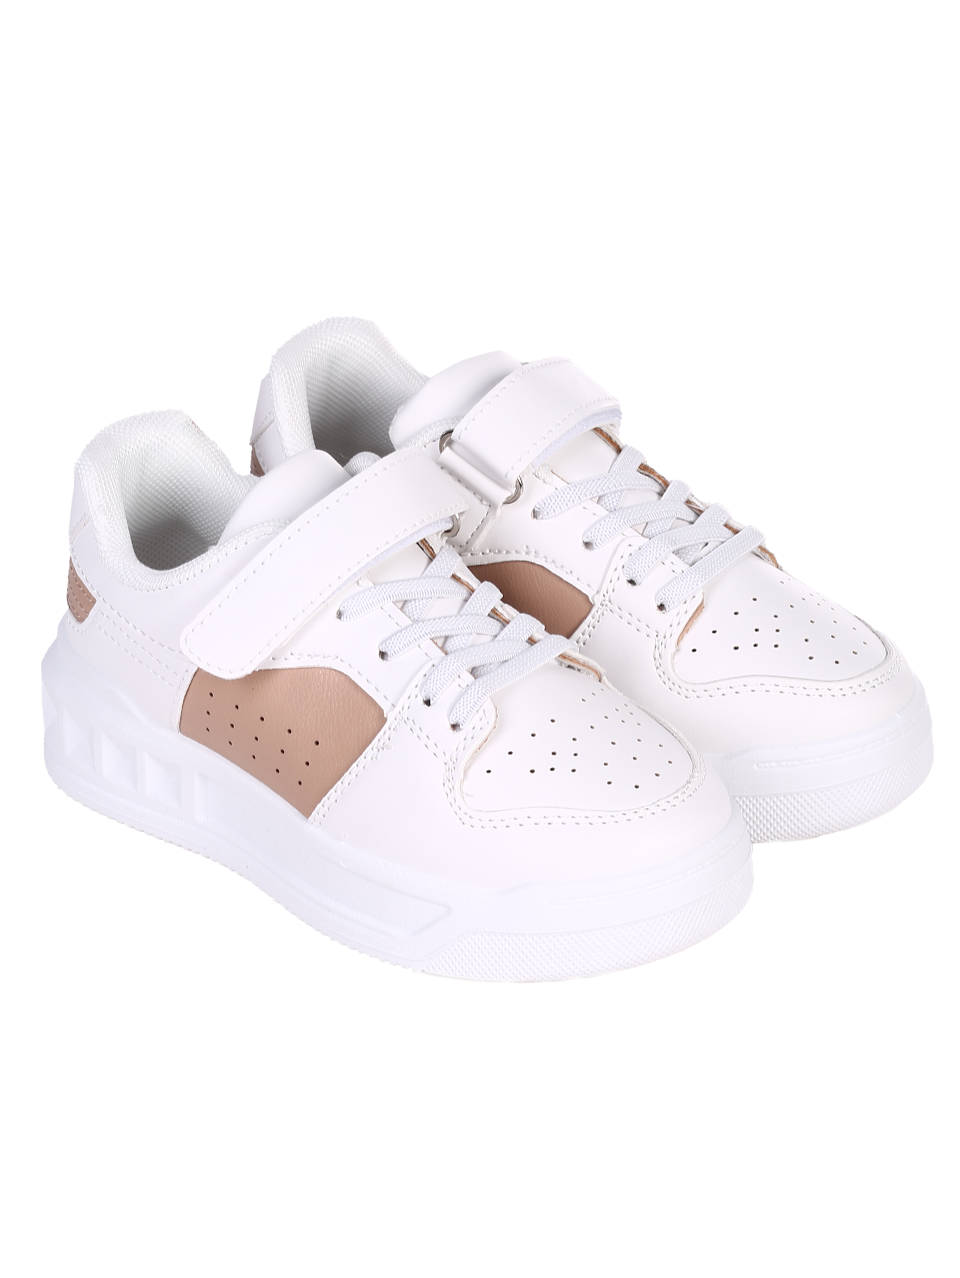 Комфортни детски обувки в бял/бежов цвят 18U-24082 white/beige